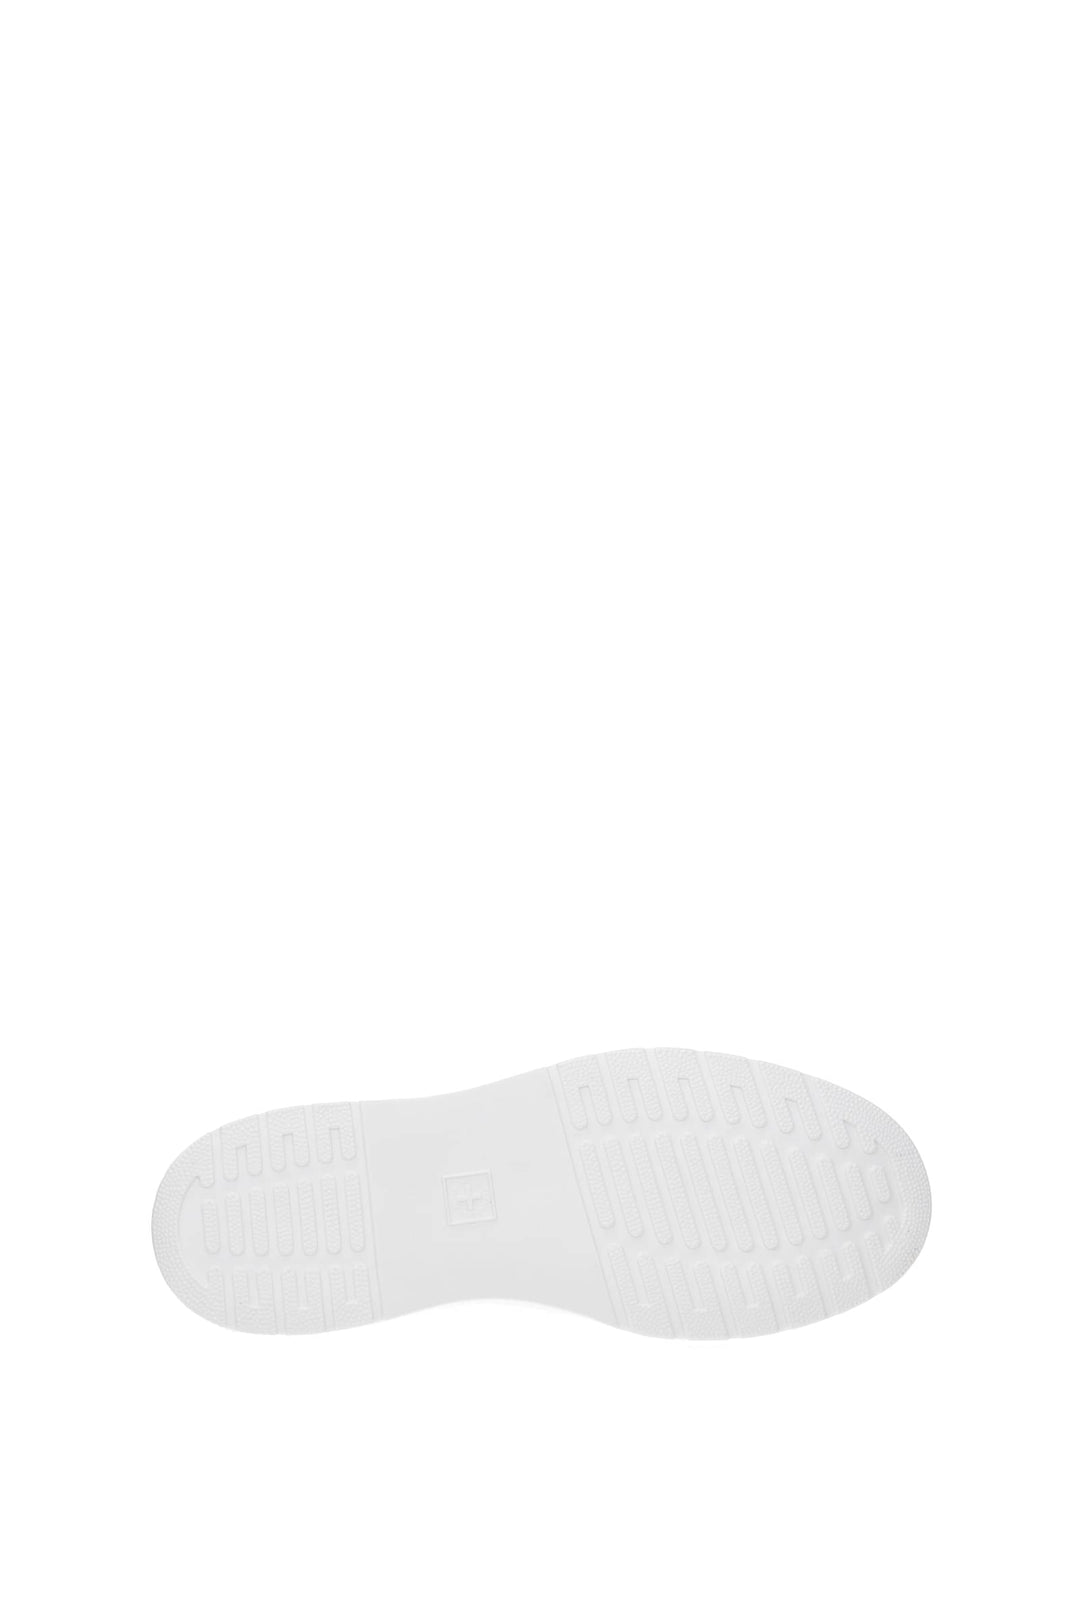 Sneakers Dante Pelle Bianco Bianco Ottico - Dr. Martens - Uomo